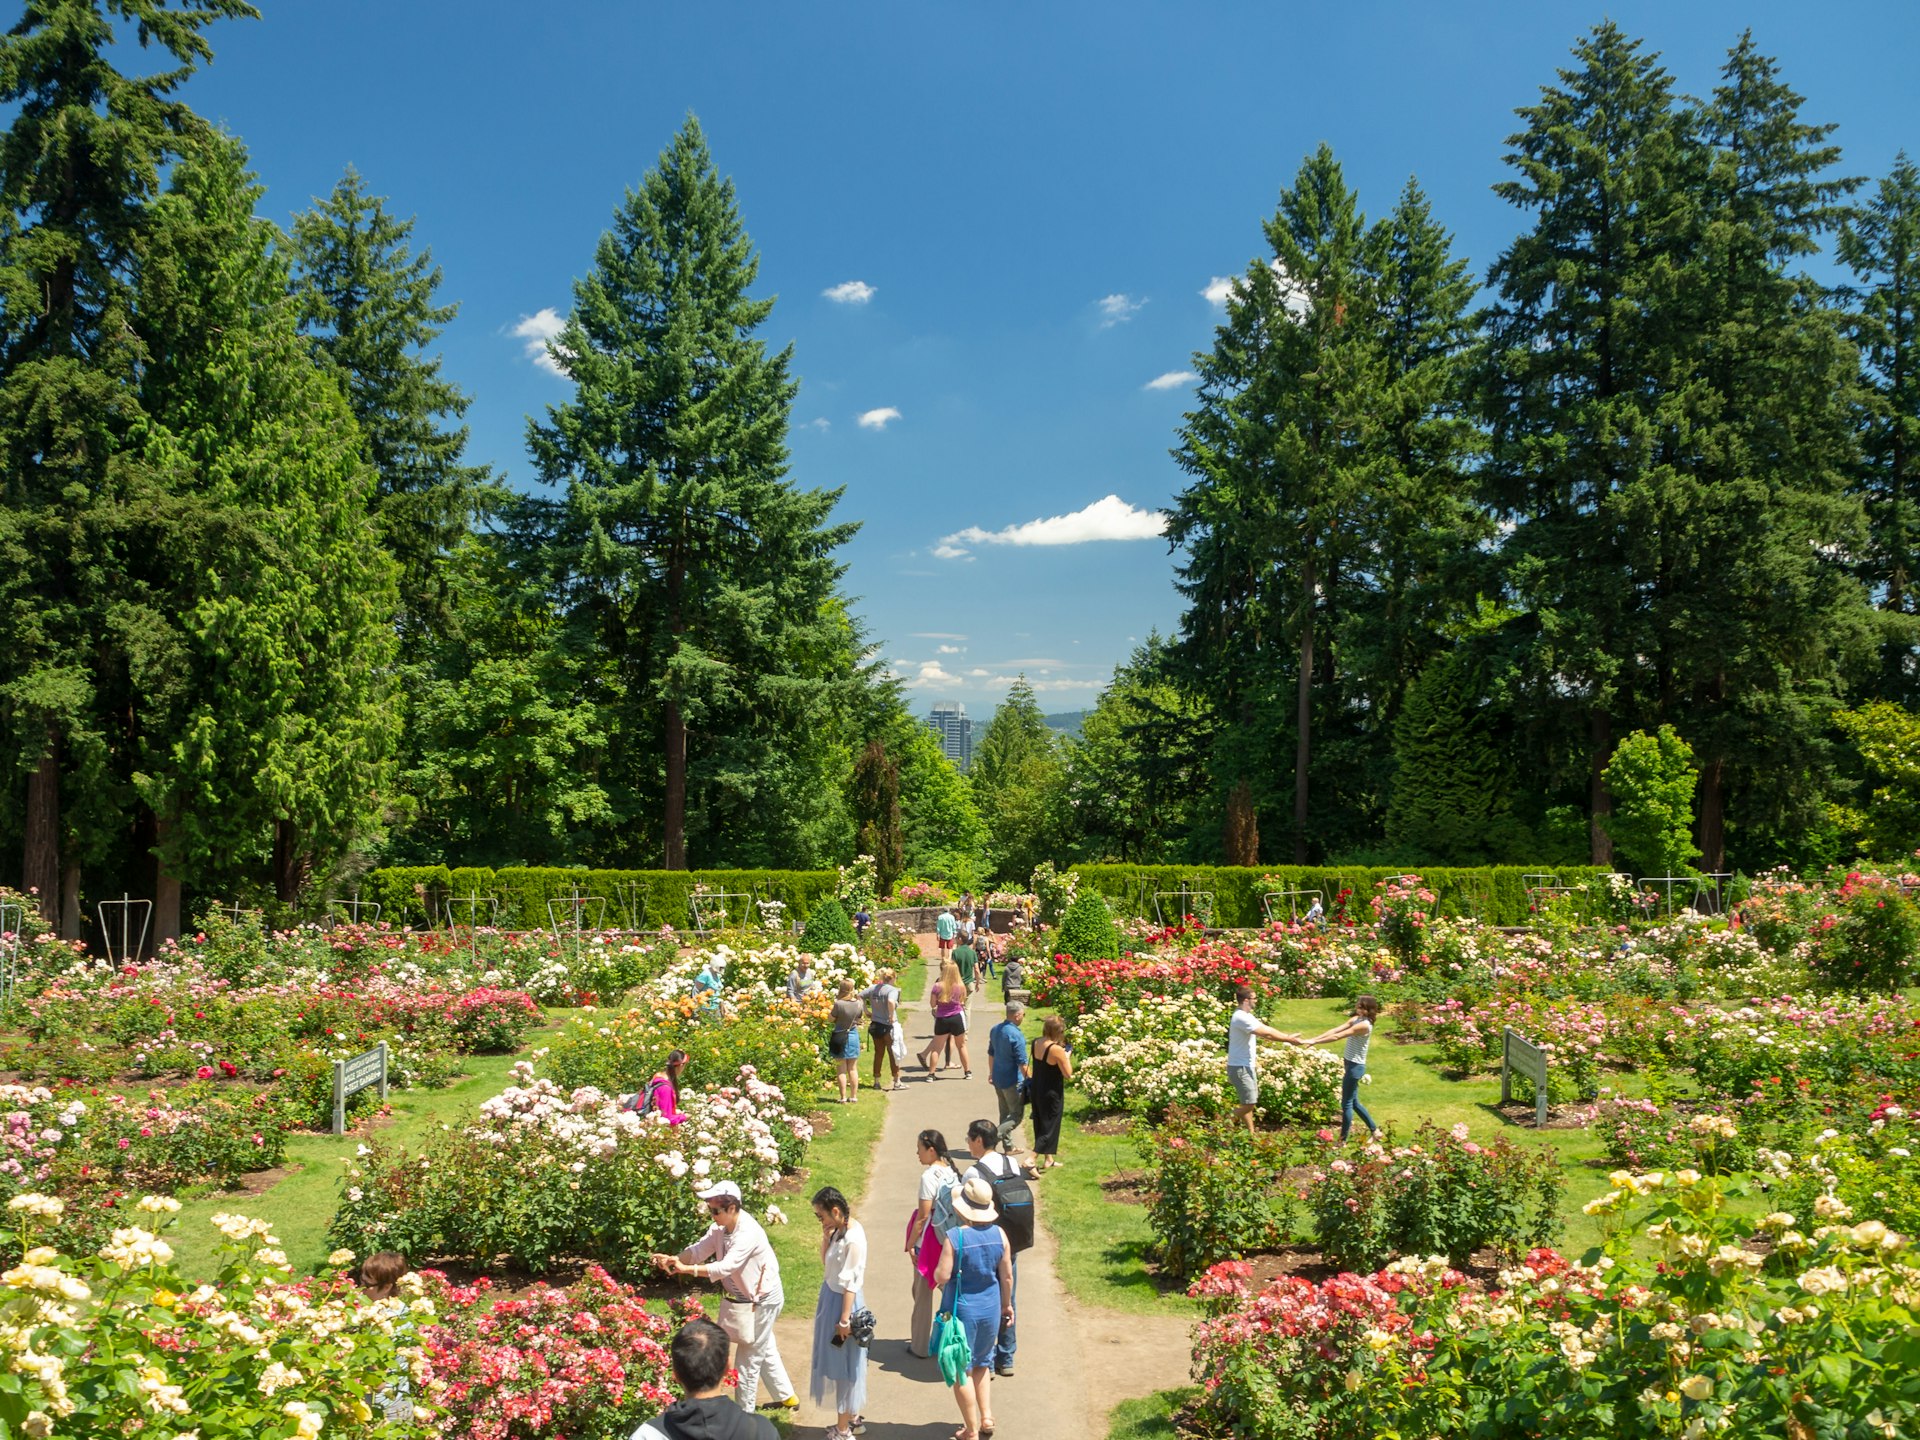 Visitors at the International Rose Test Garden in Portland, Oregon